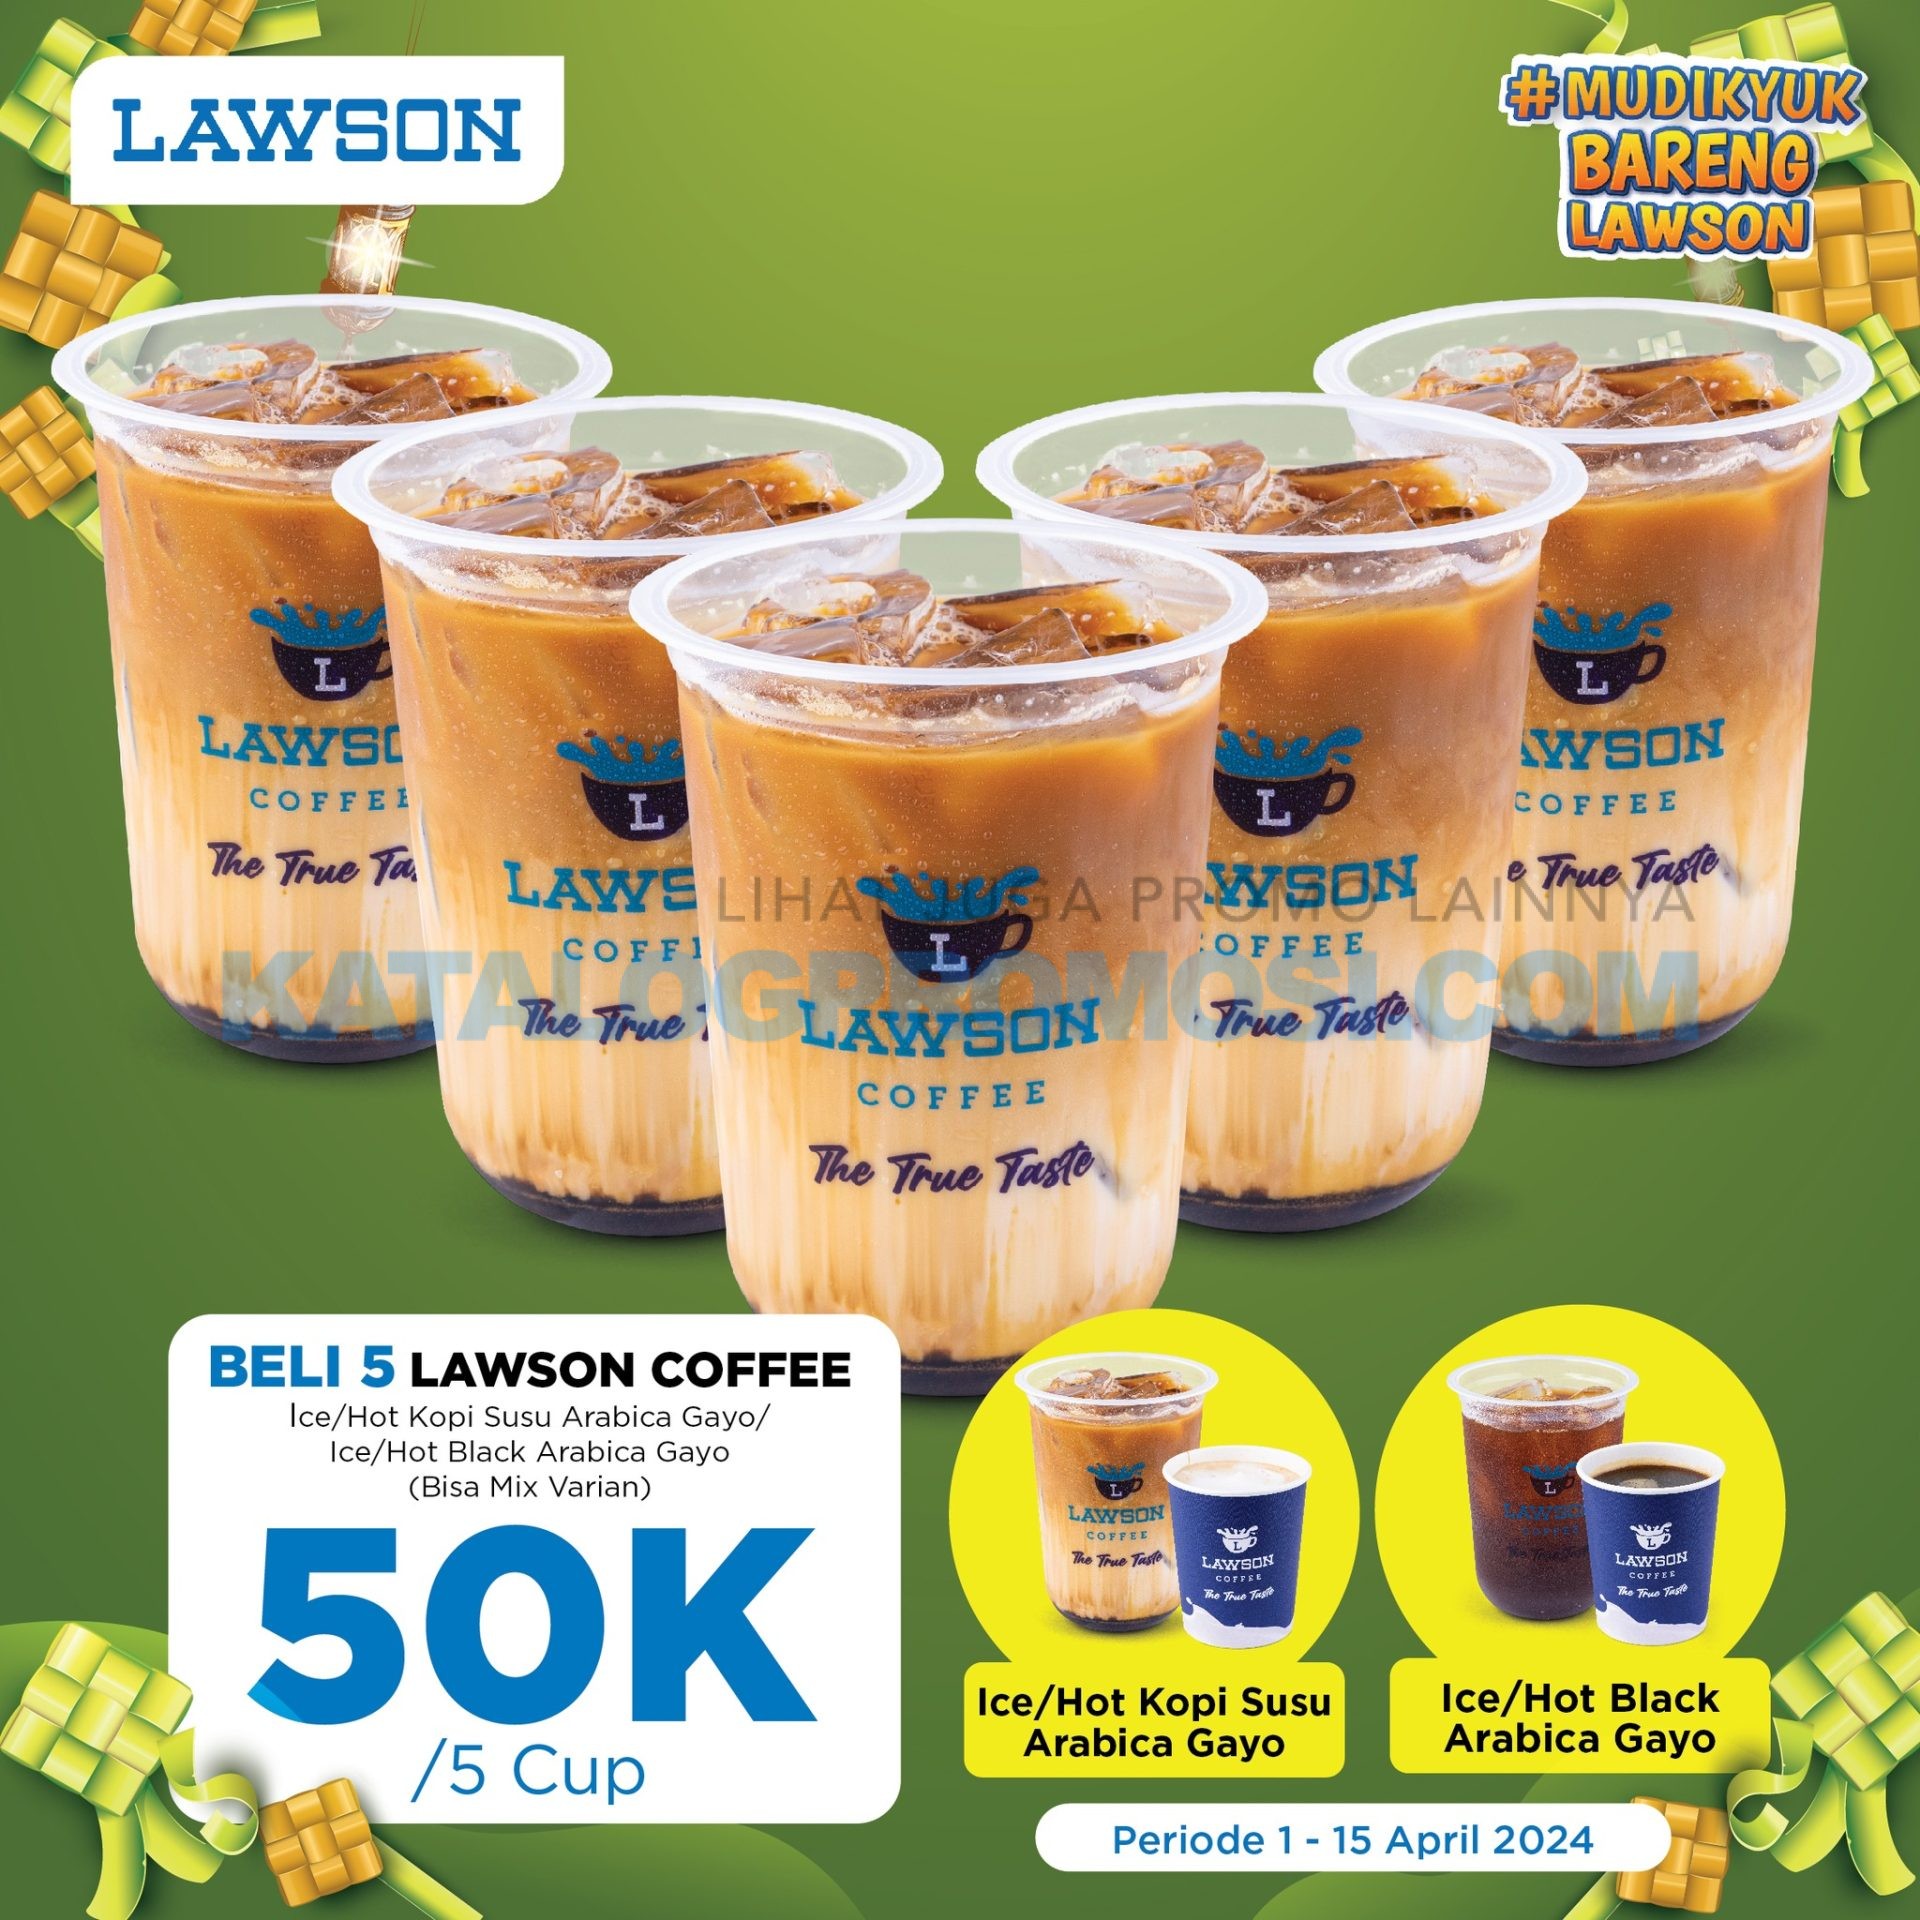 Promo LAWSON BELI 5 LAWSON COFFEE cuma Rp. 50RIBU berlaku mulai tanggal 01-15 April 2024